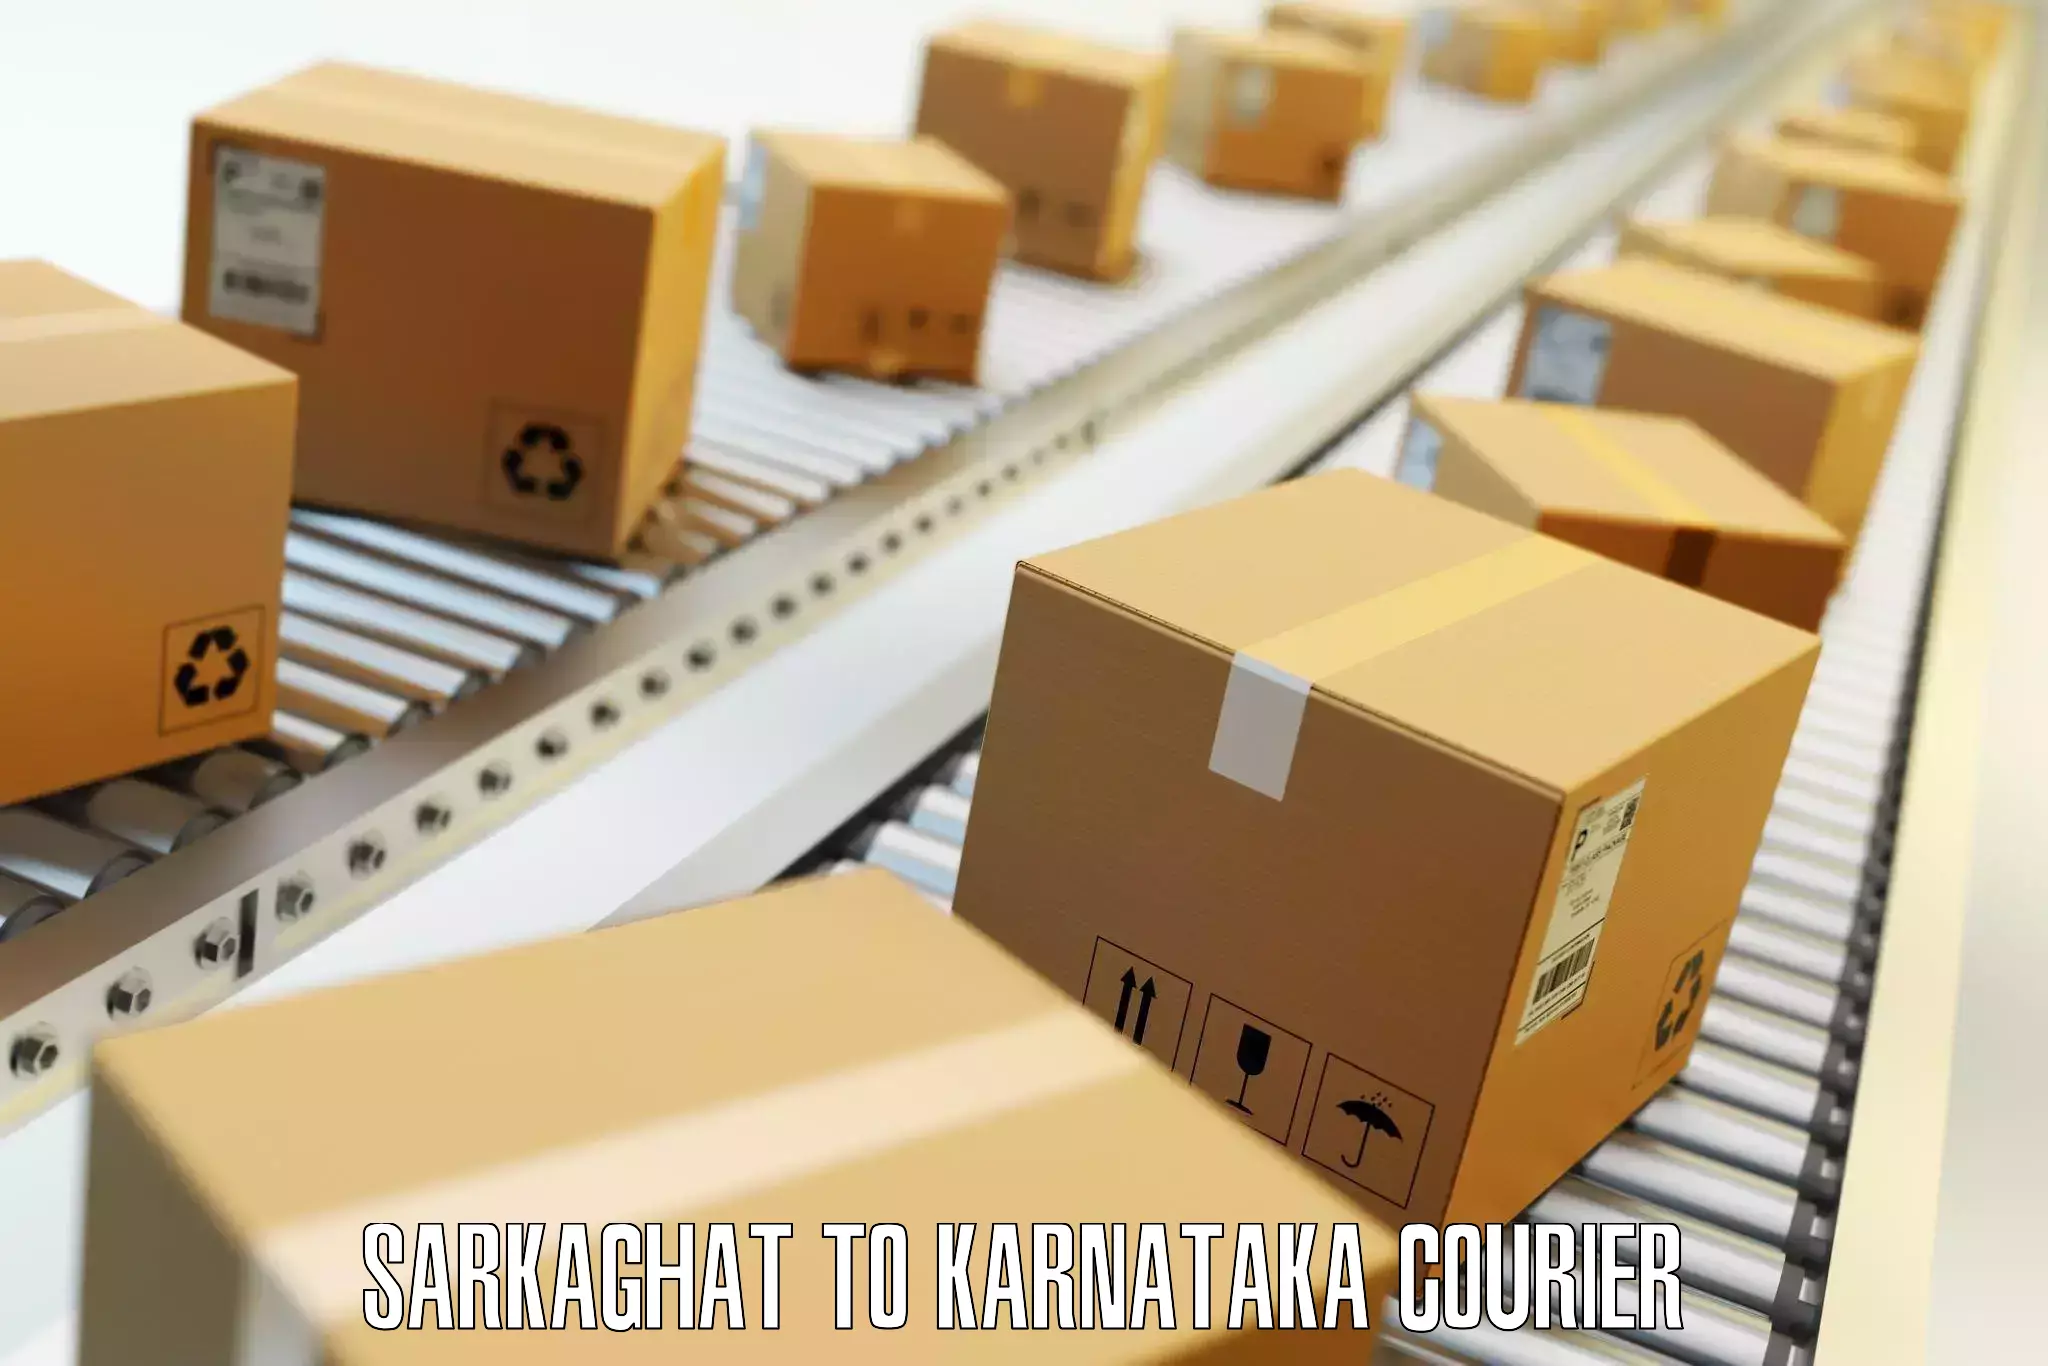 Comprehensive baggage service Sarkaghat to Karnataka